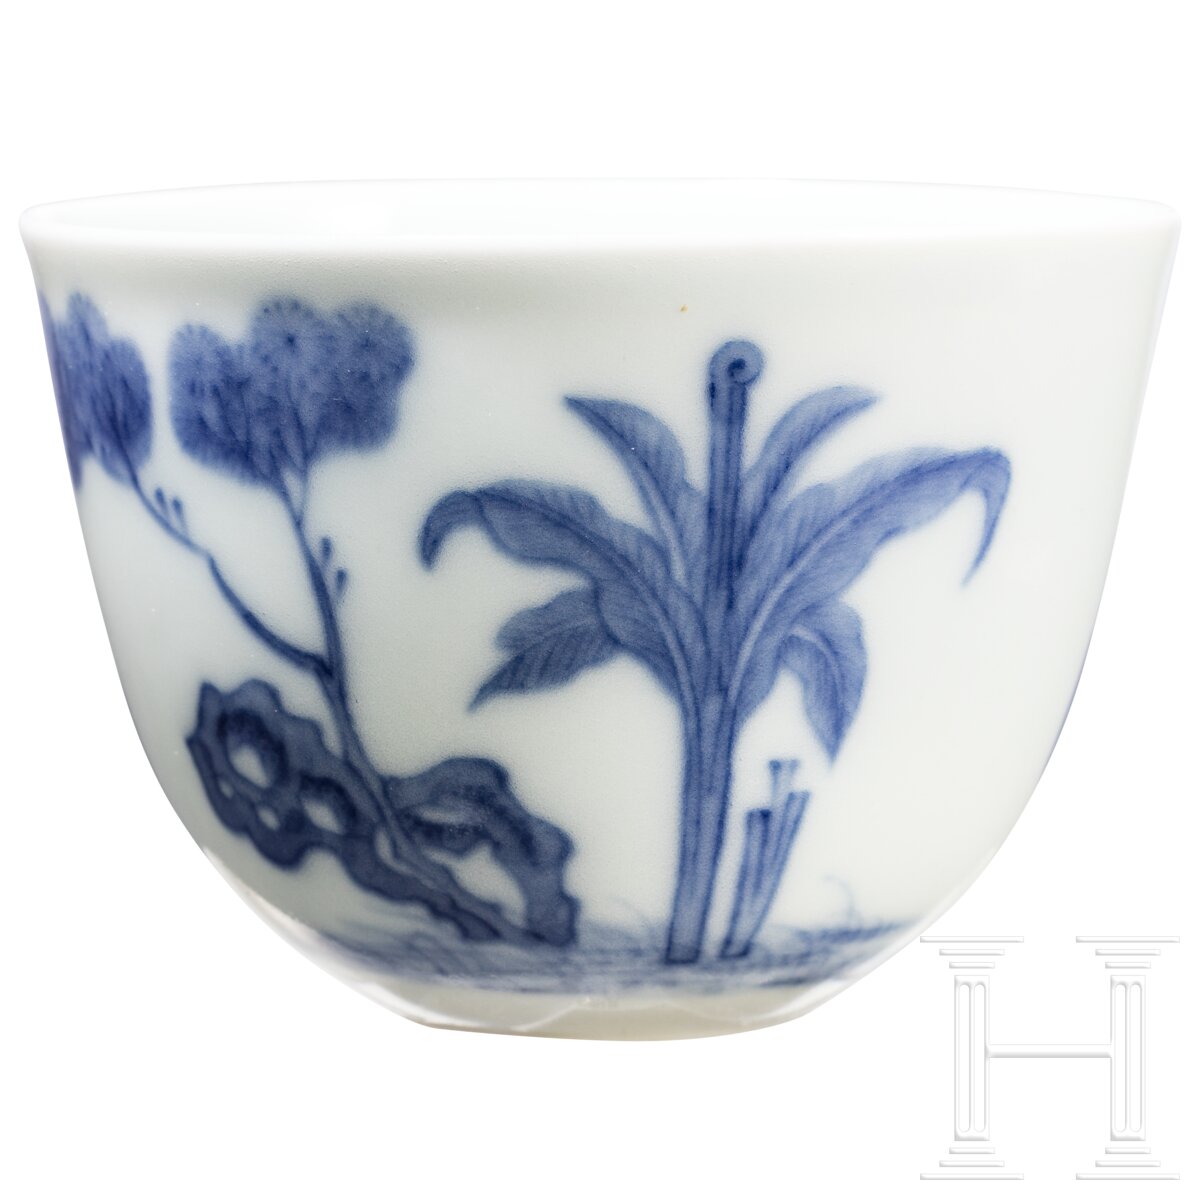 Blau-weißes Koppchen mit erotischer Darstellung und Kangxi-Marke, wohl aus dieser Zeit (18. Jhdt.) - Image 2 of 12